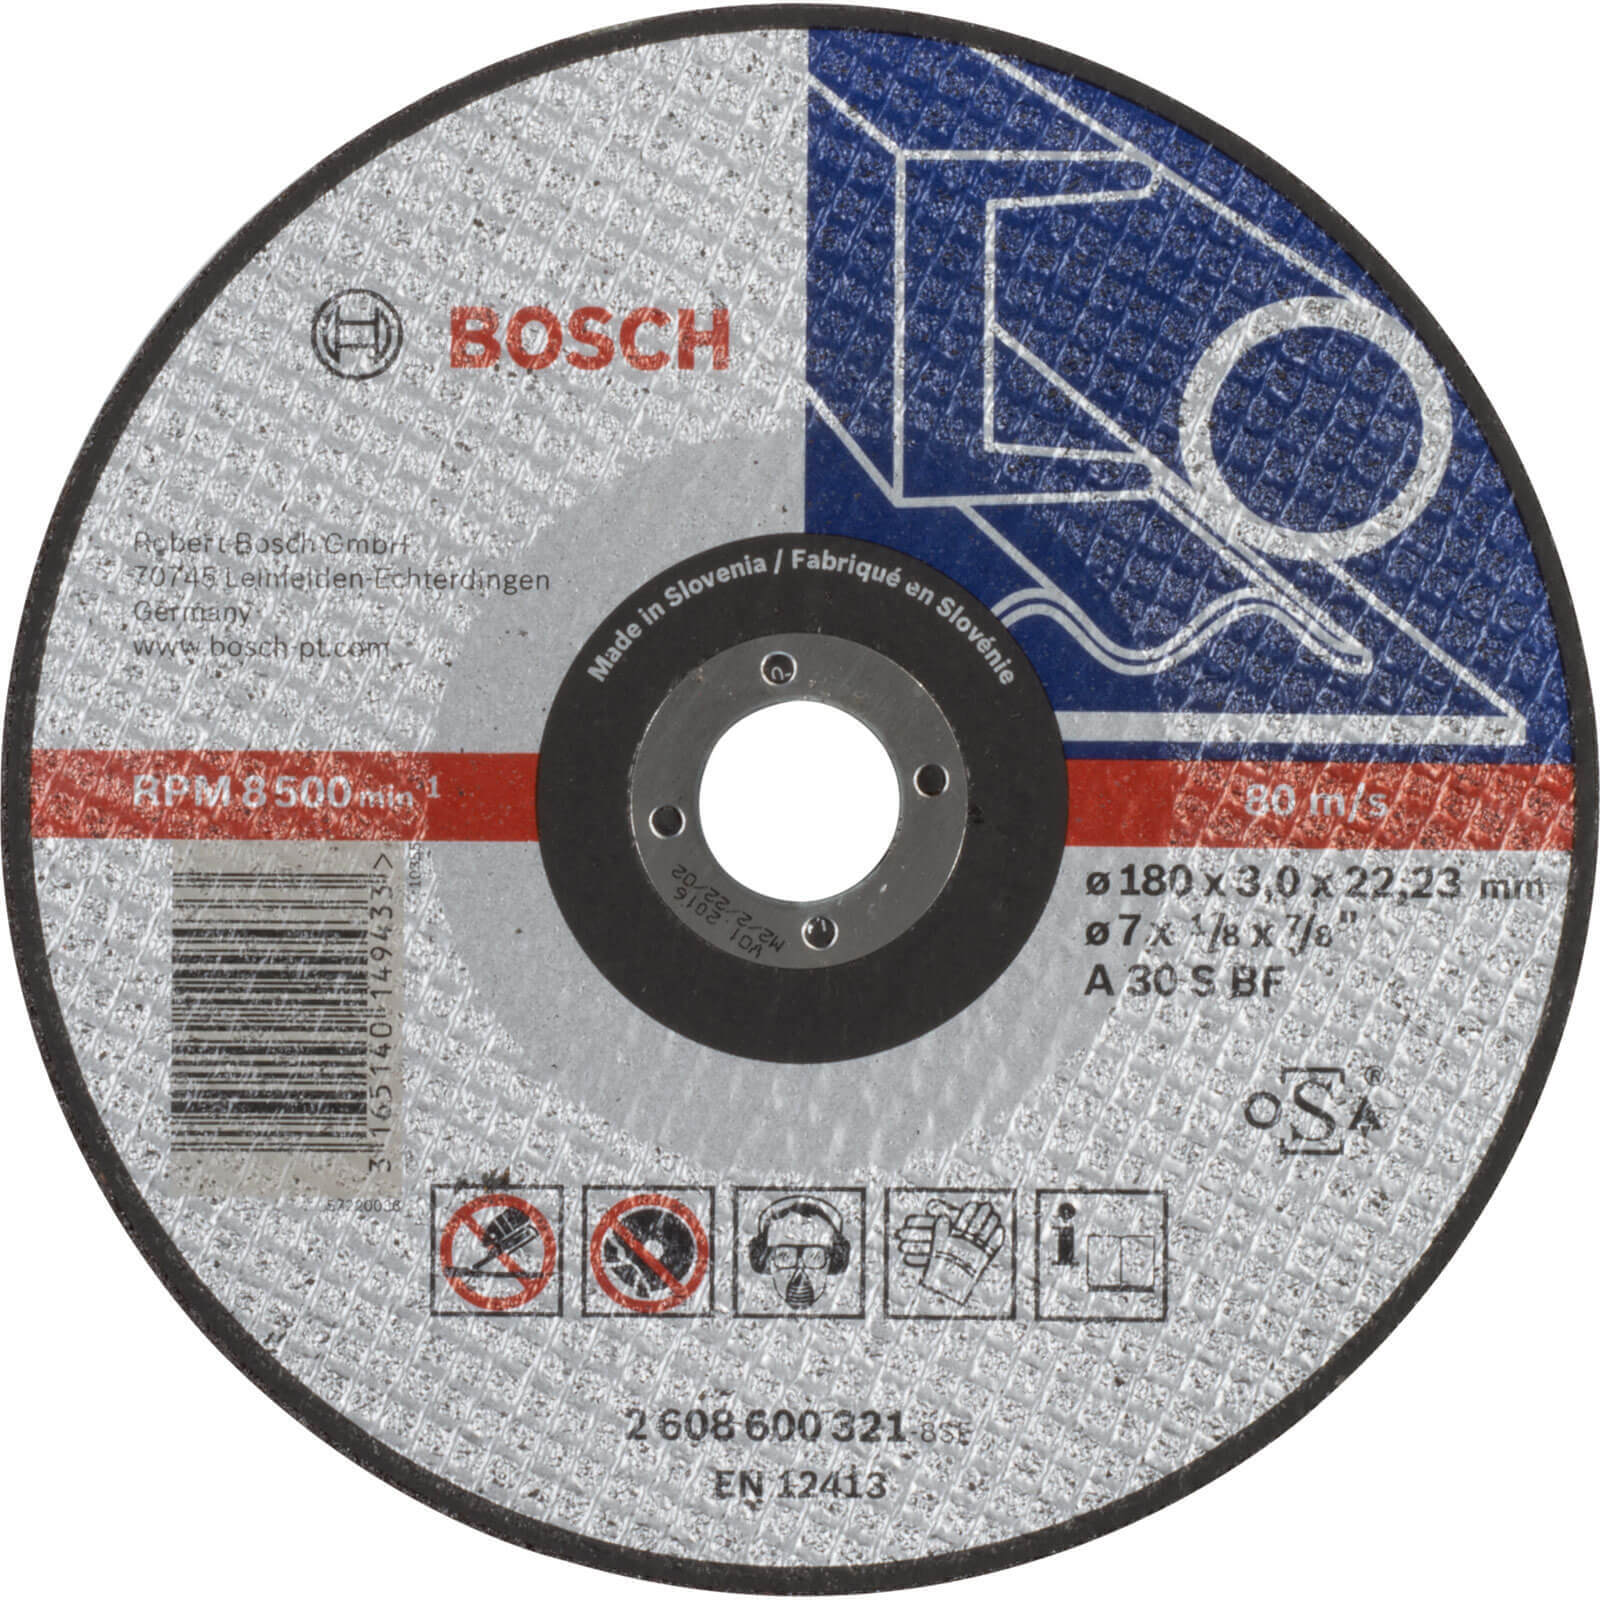 Bosch Expert A30S BF Flat Metal Cutting Disc 180mm